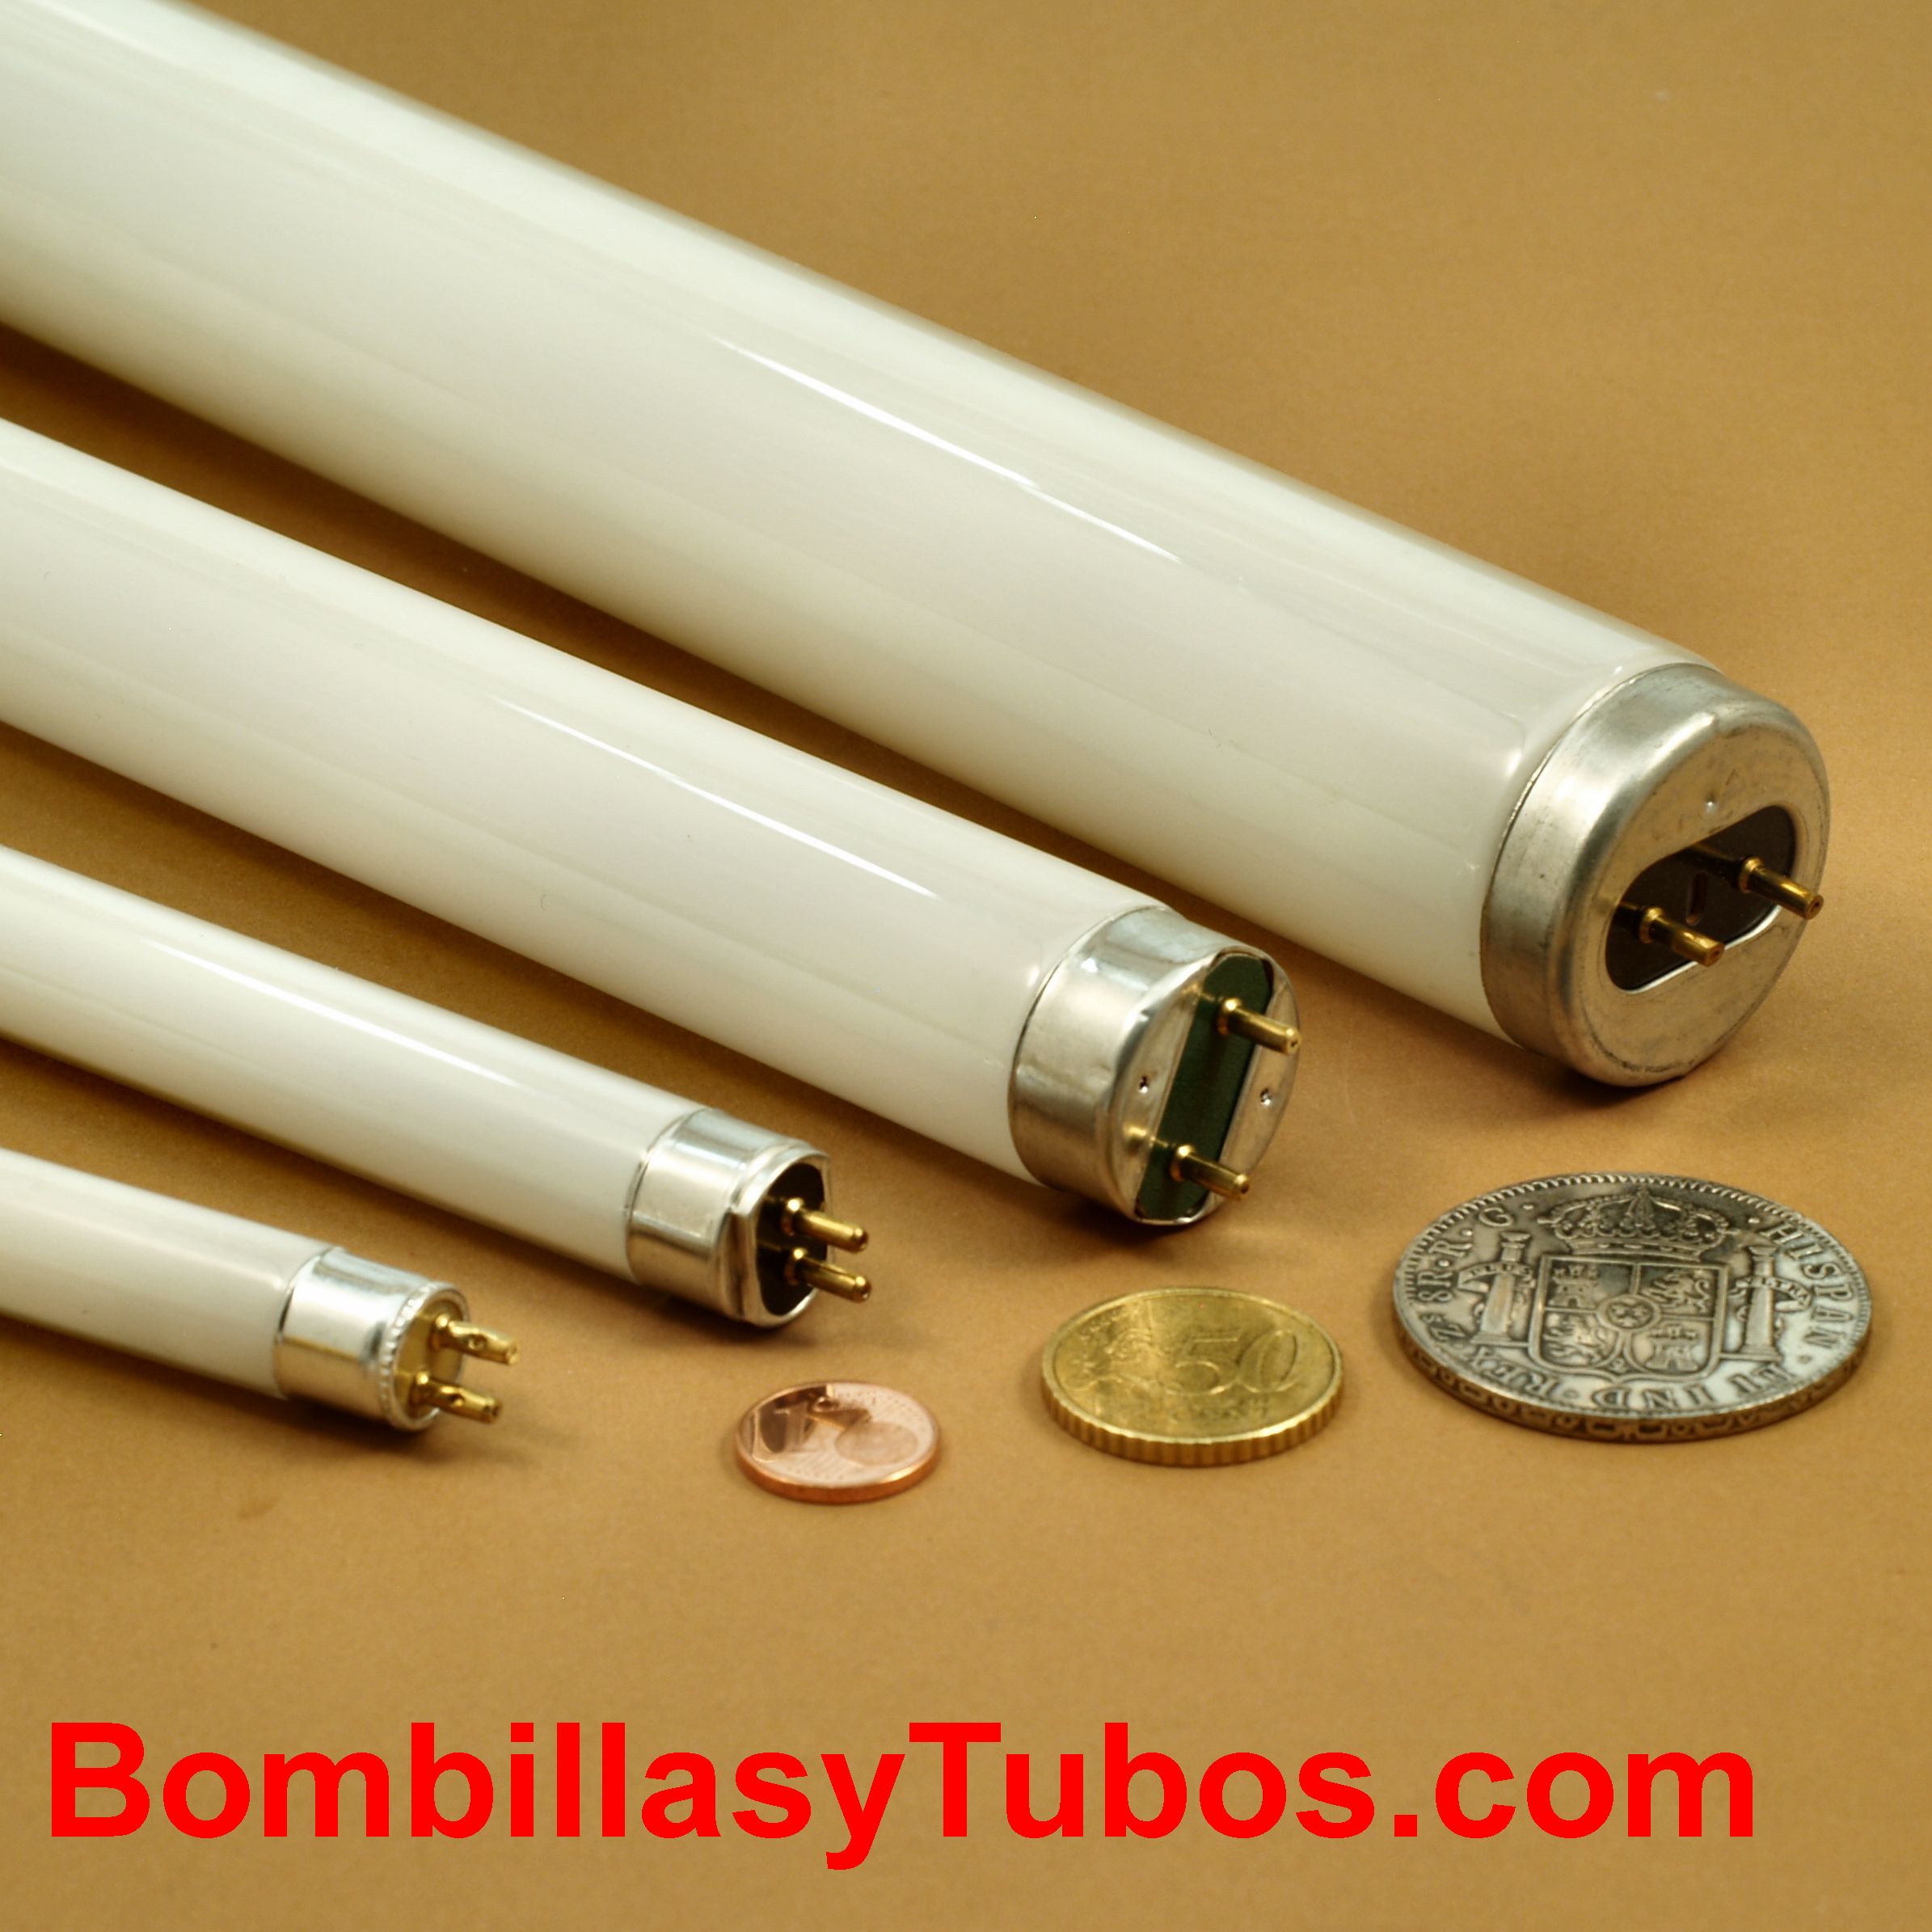 Tamaos y formatos de los tubos fluorescentes. T4, T5, T8